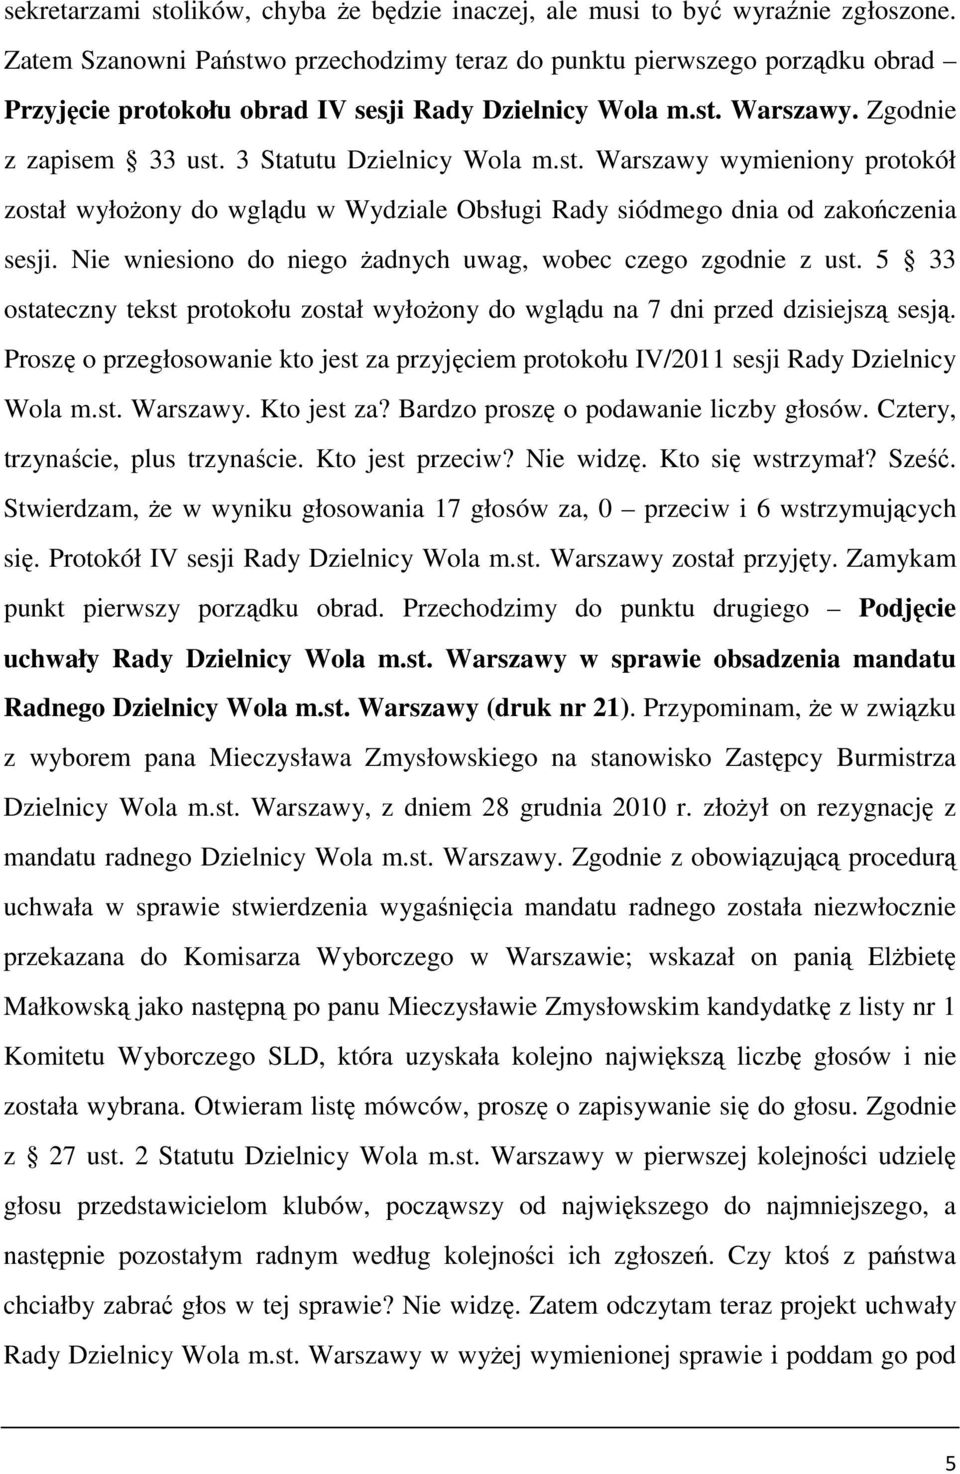 3 Statutu Dzielnicy Wola m.st. Warszawy wymieniony protokół został wyłoŝony do wglądu w Wydziale Obsługi Rady siódmego dnia od zakończenia sesji.